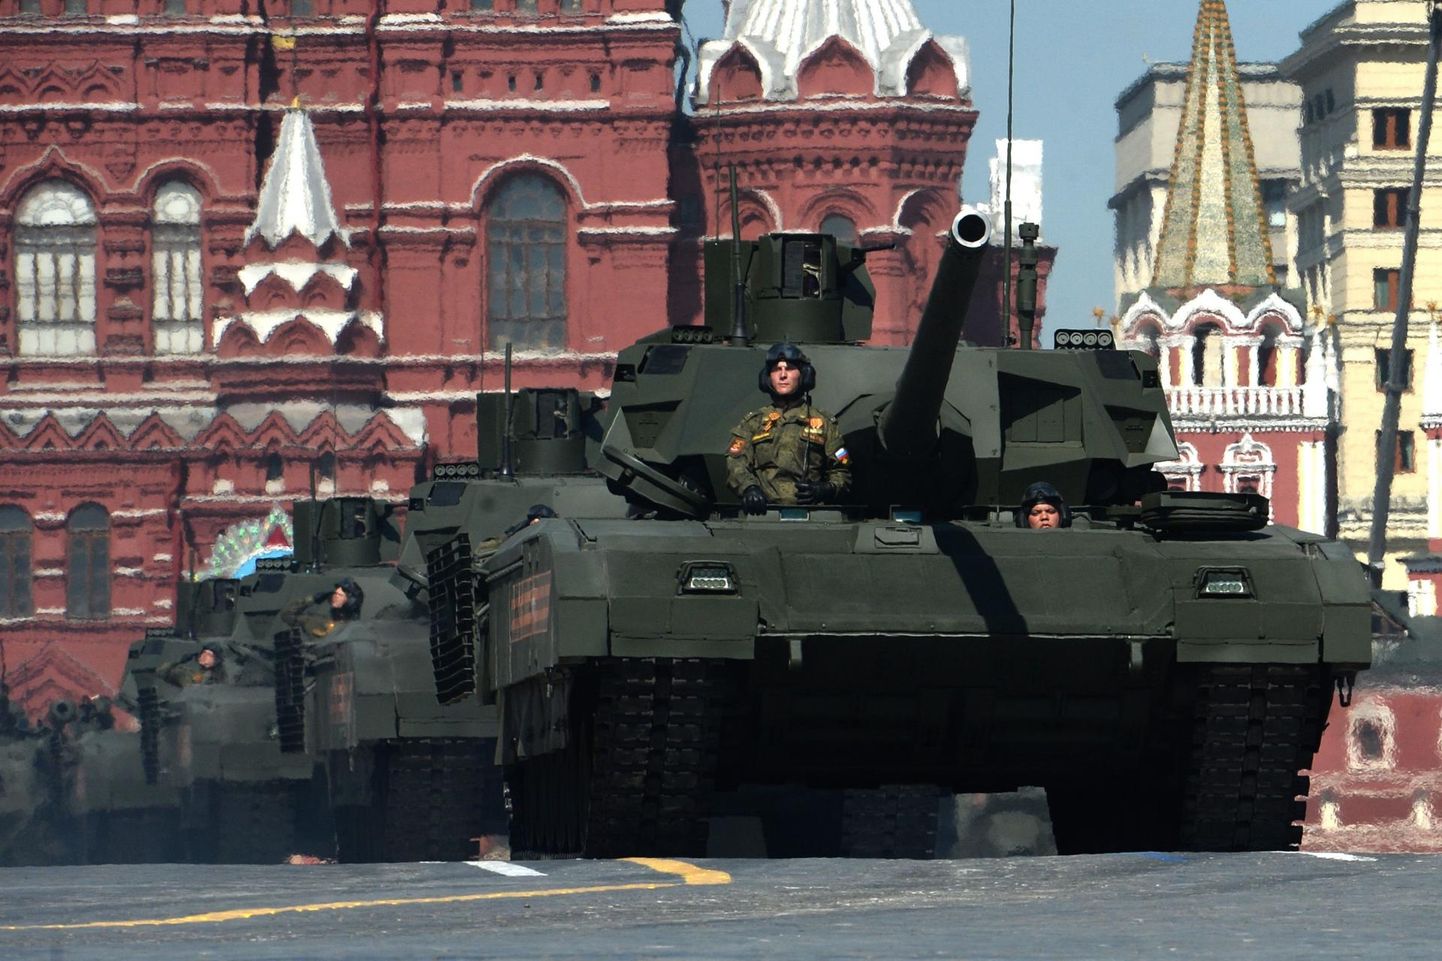 Armata T-14 tankid 9. mail 2016 Moskvas Punasel väljakul.